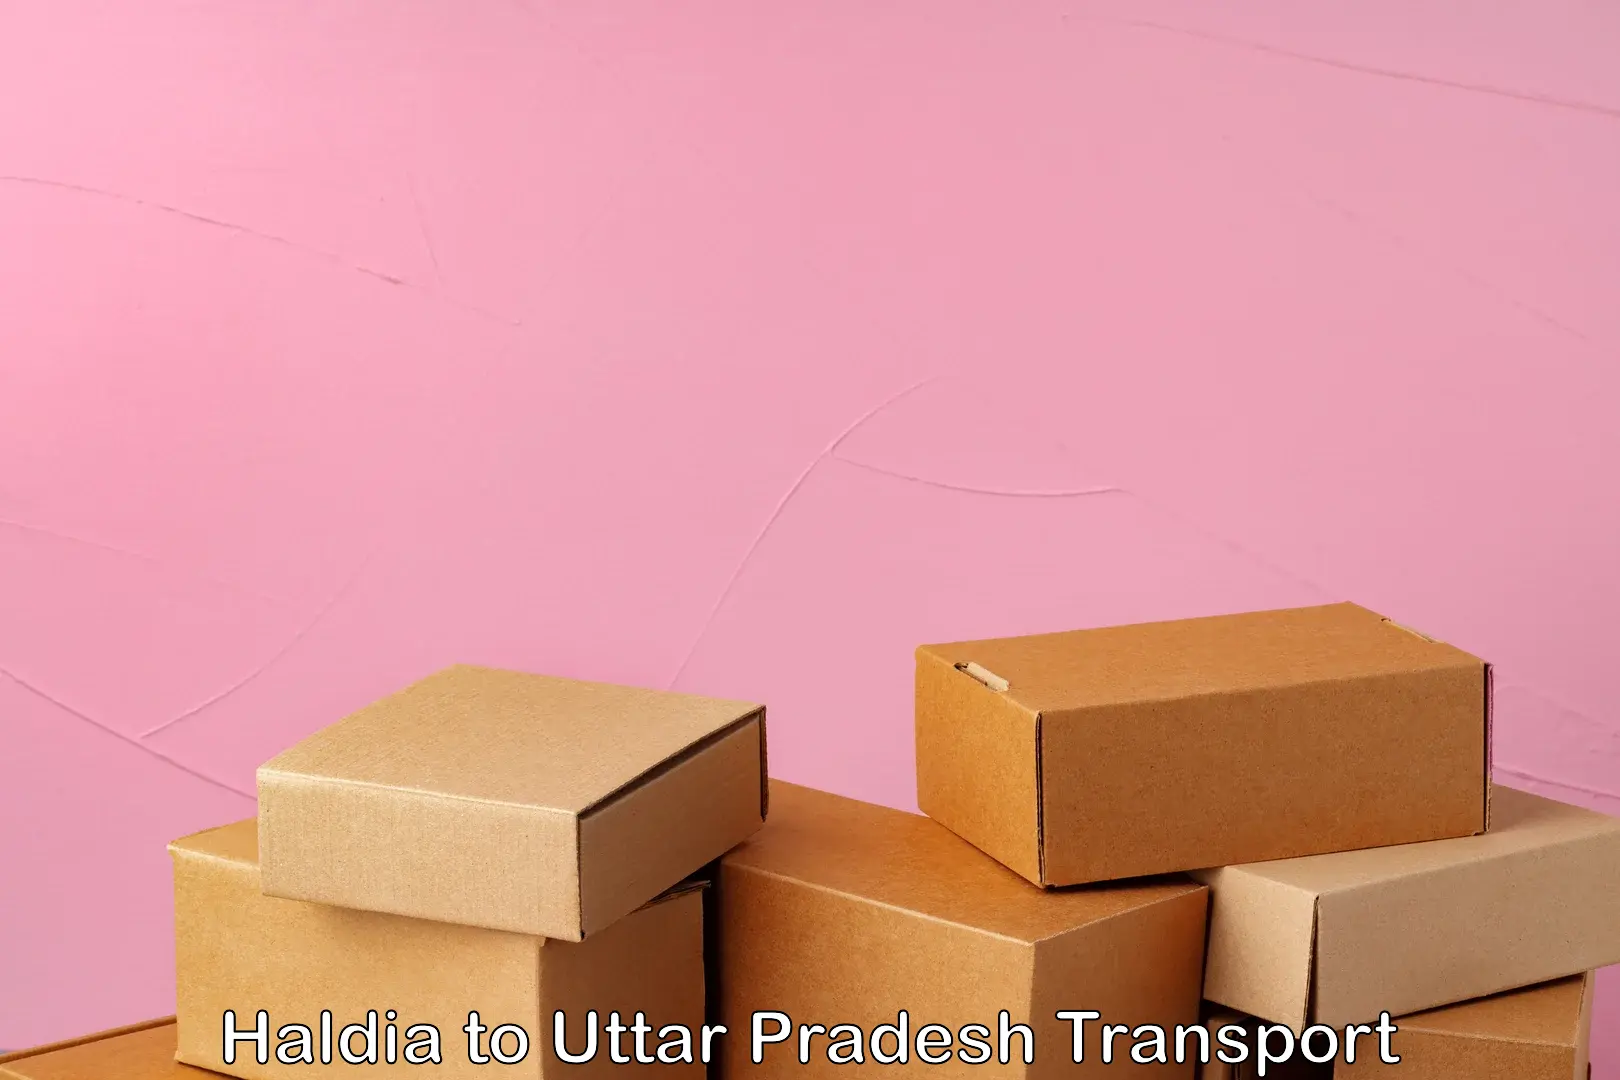 Parcel transport services Haldia to Uttar Pradesh